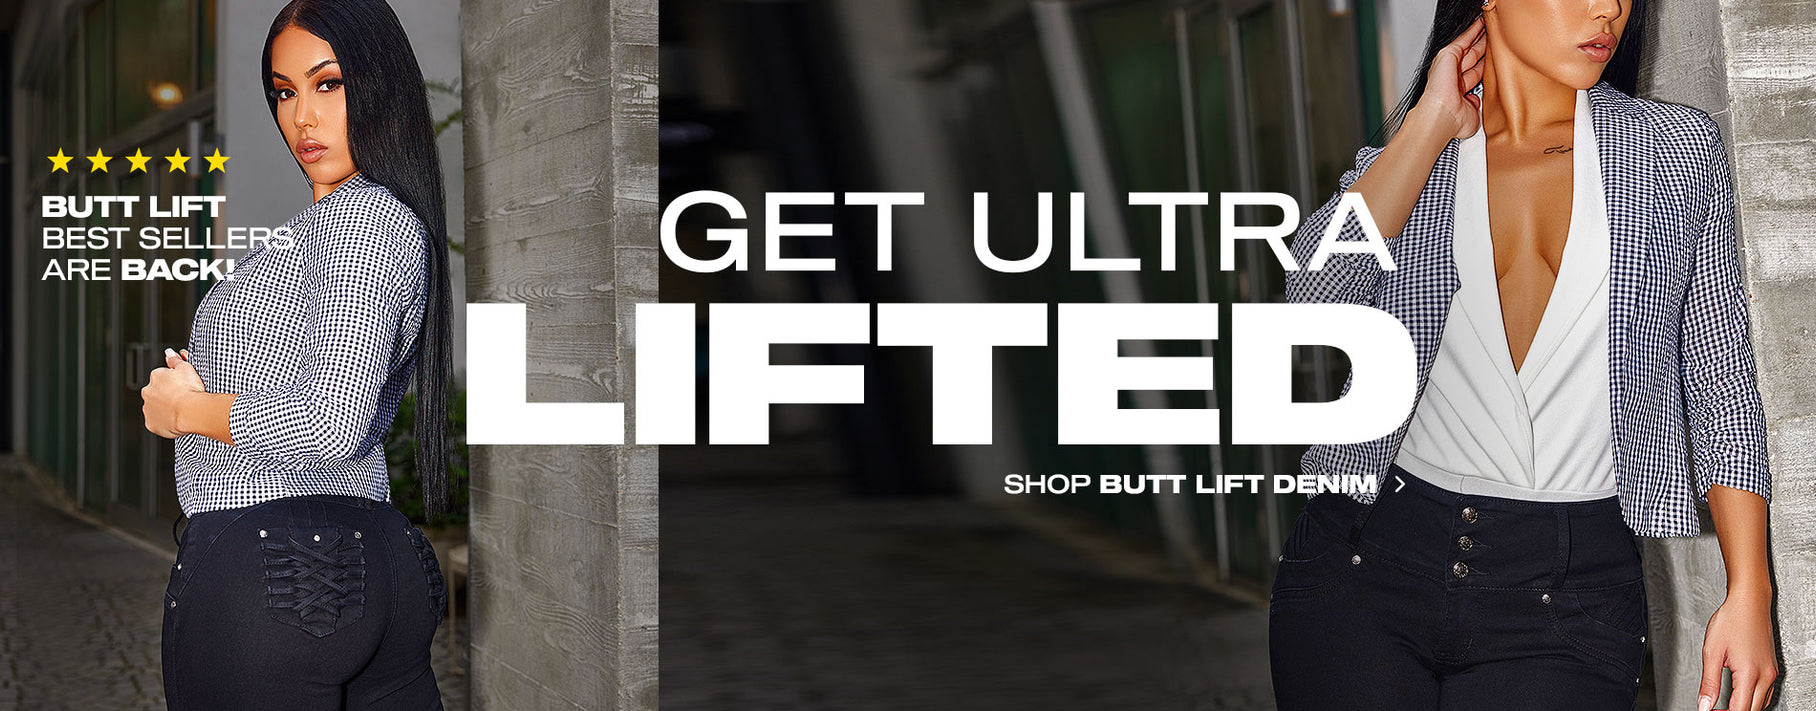 Get Ultra Lifted: Butt Lift Best-Sellers Are Back! Shop Butt Lift Denim